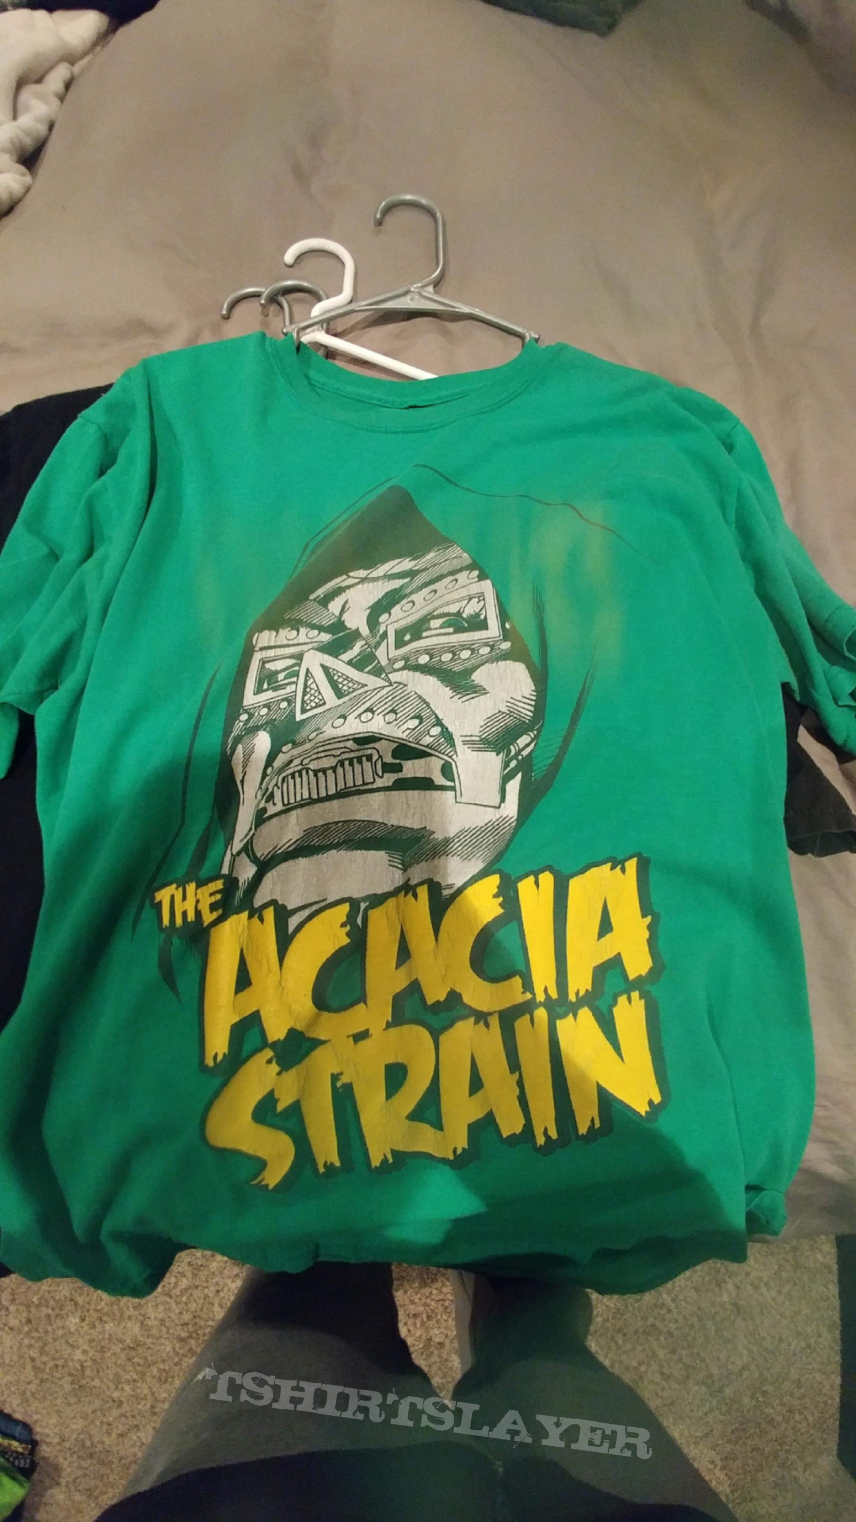 The acacia strain tshirt